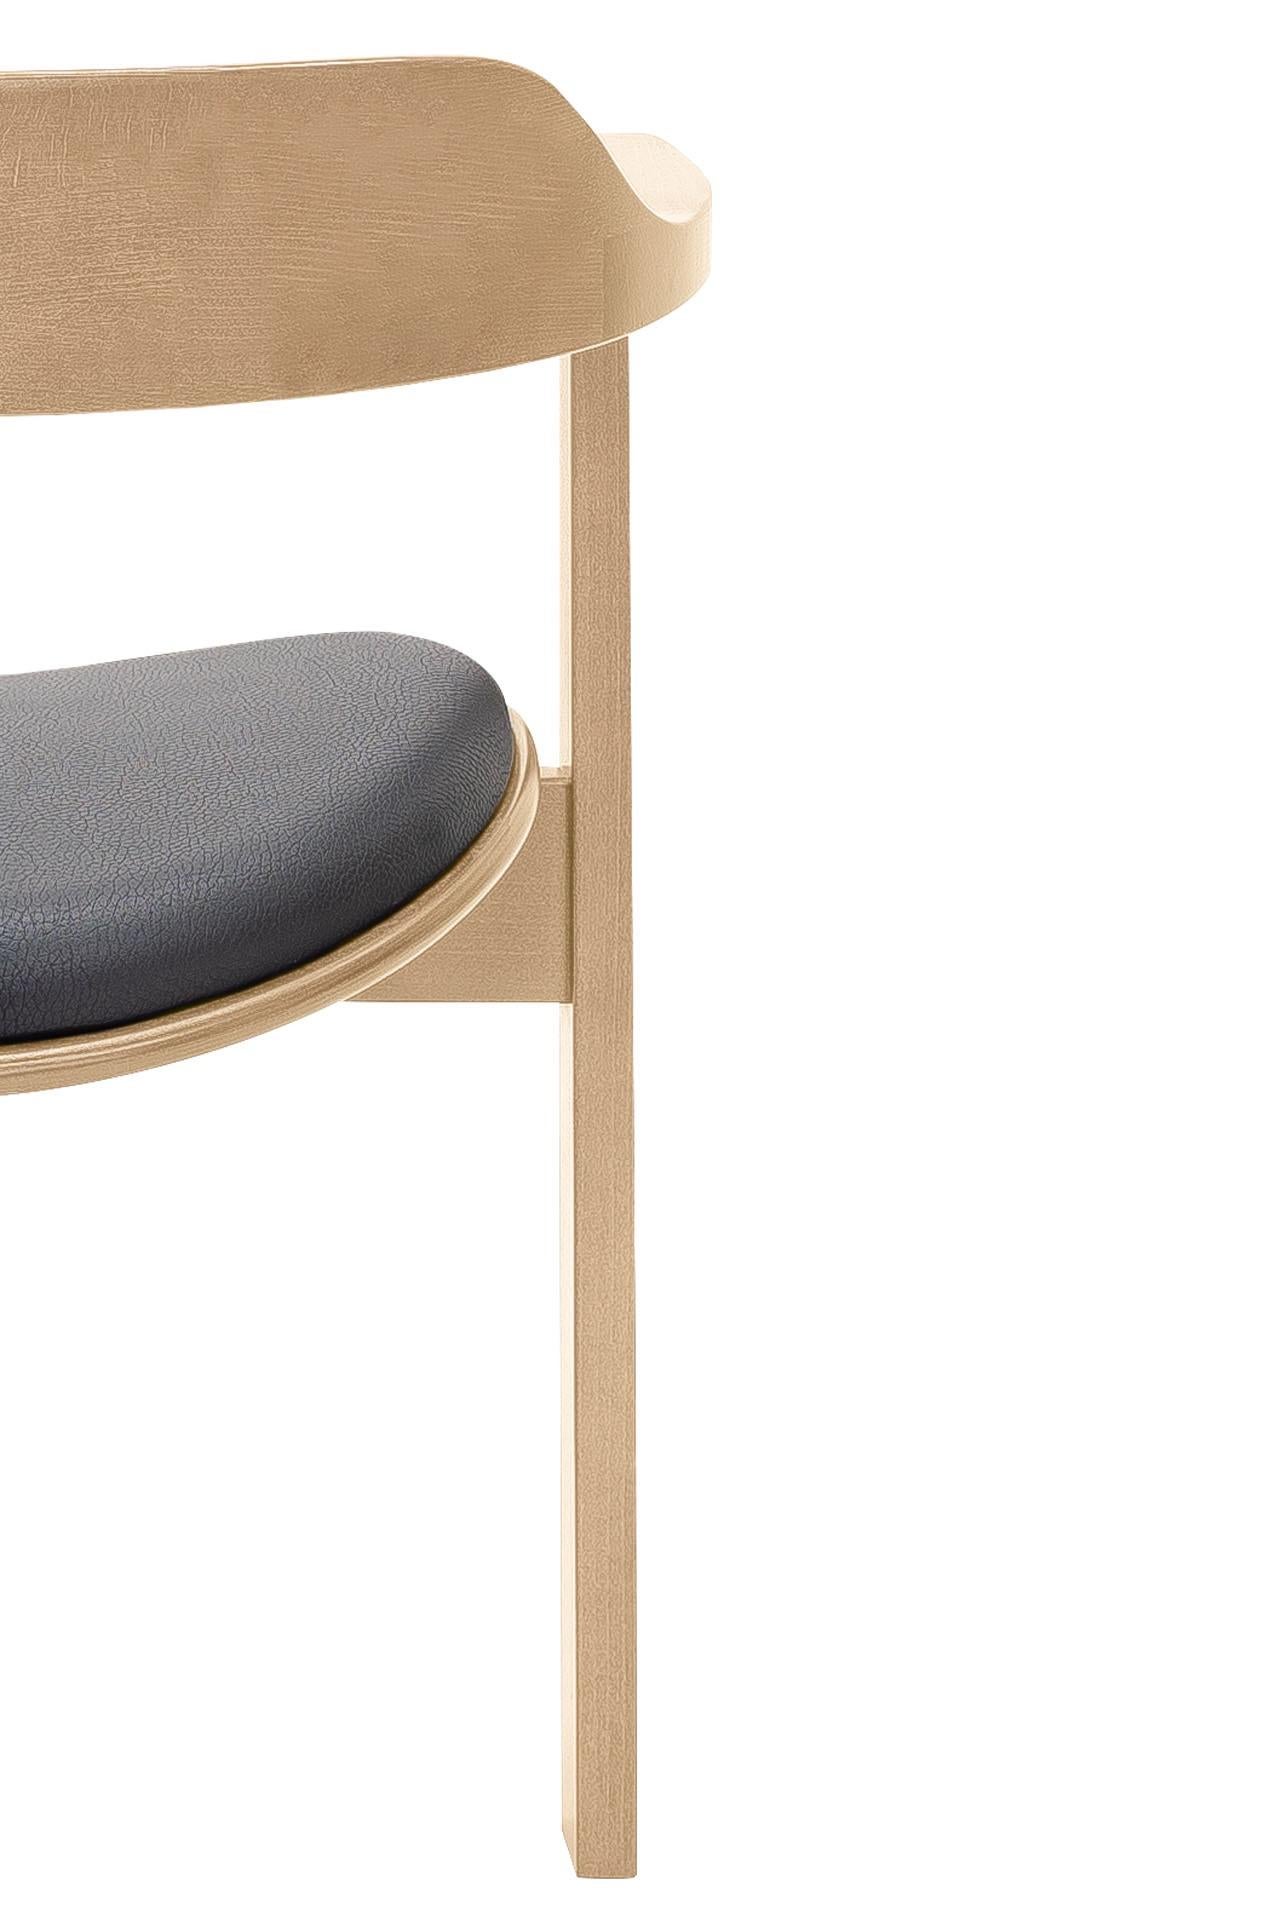 Beech Mid Century Modern 6 Natural Haussmann chair, Robert&Trix Haussmann, Design 1964 For Sale